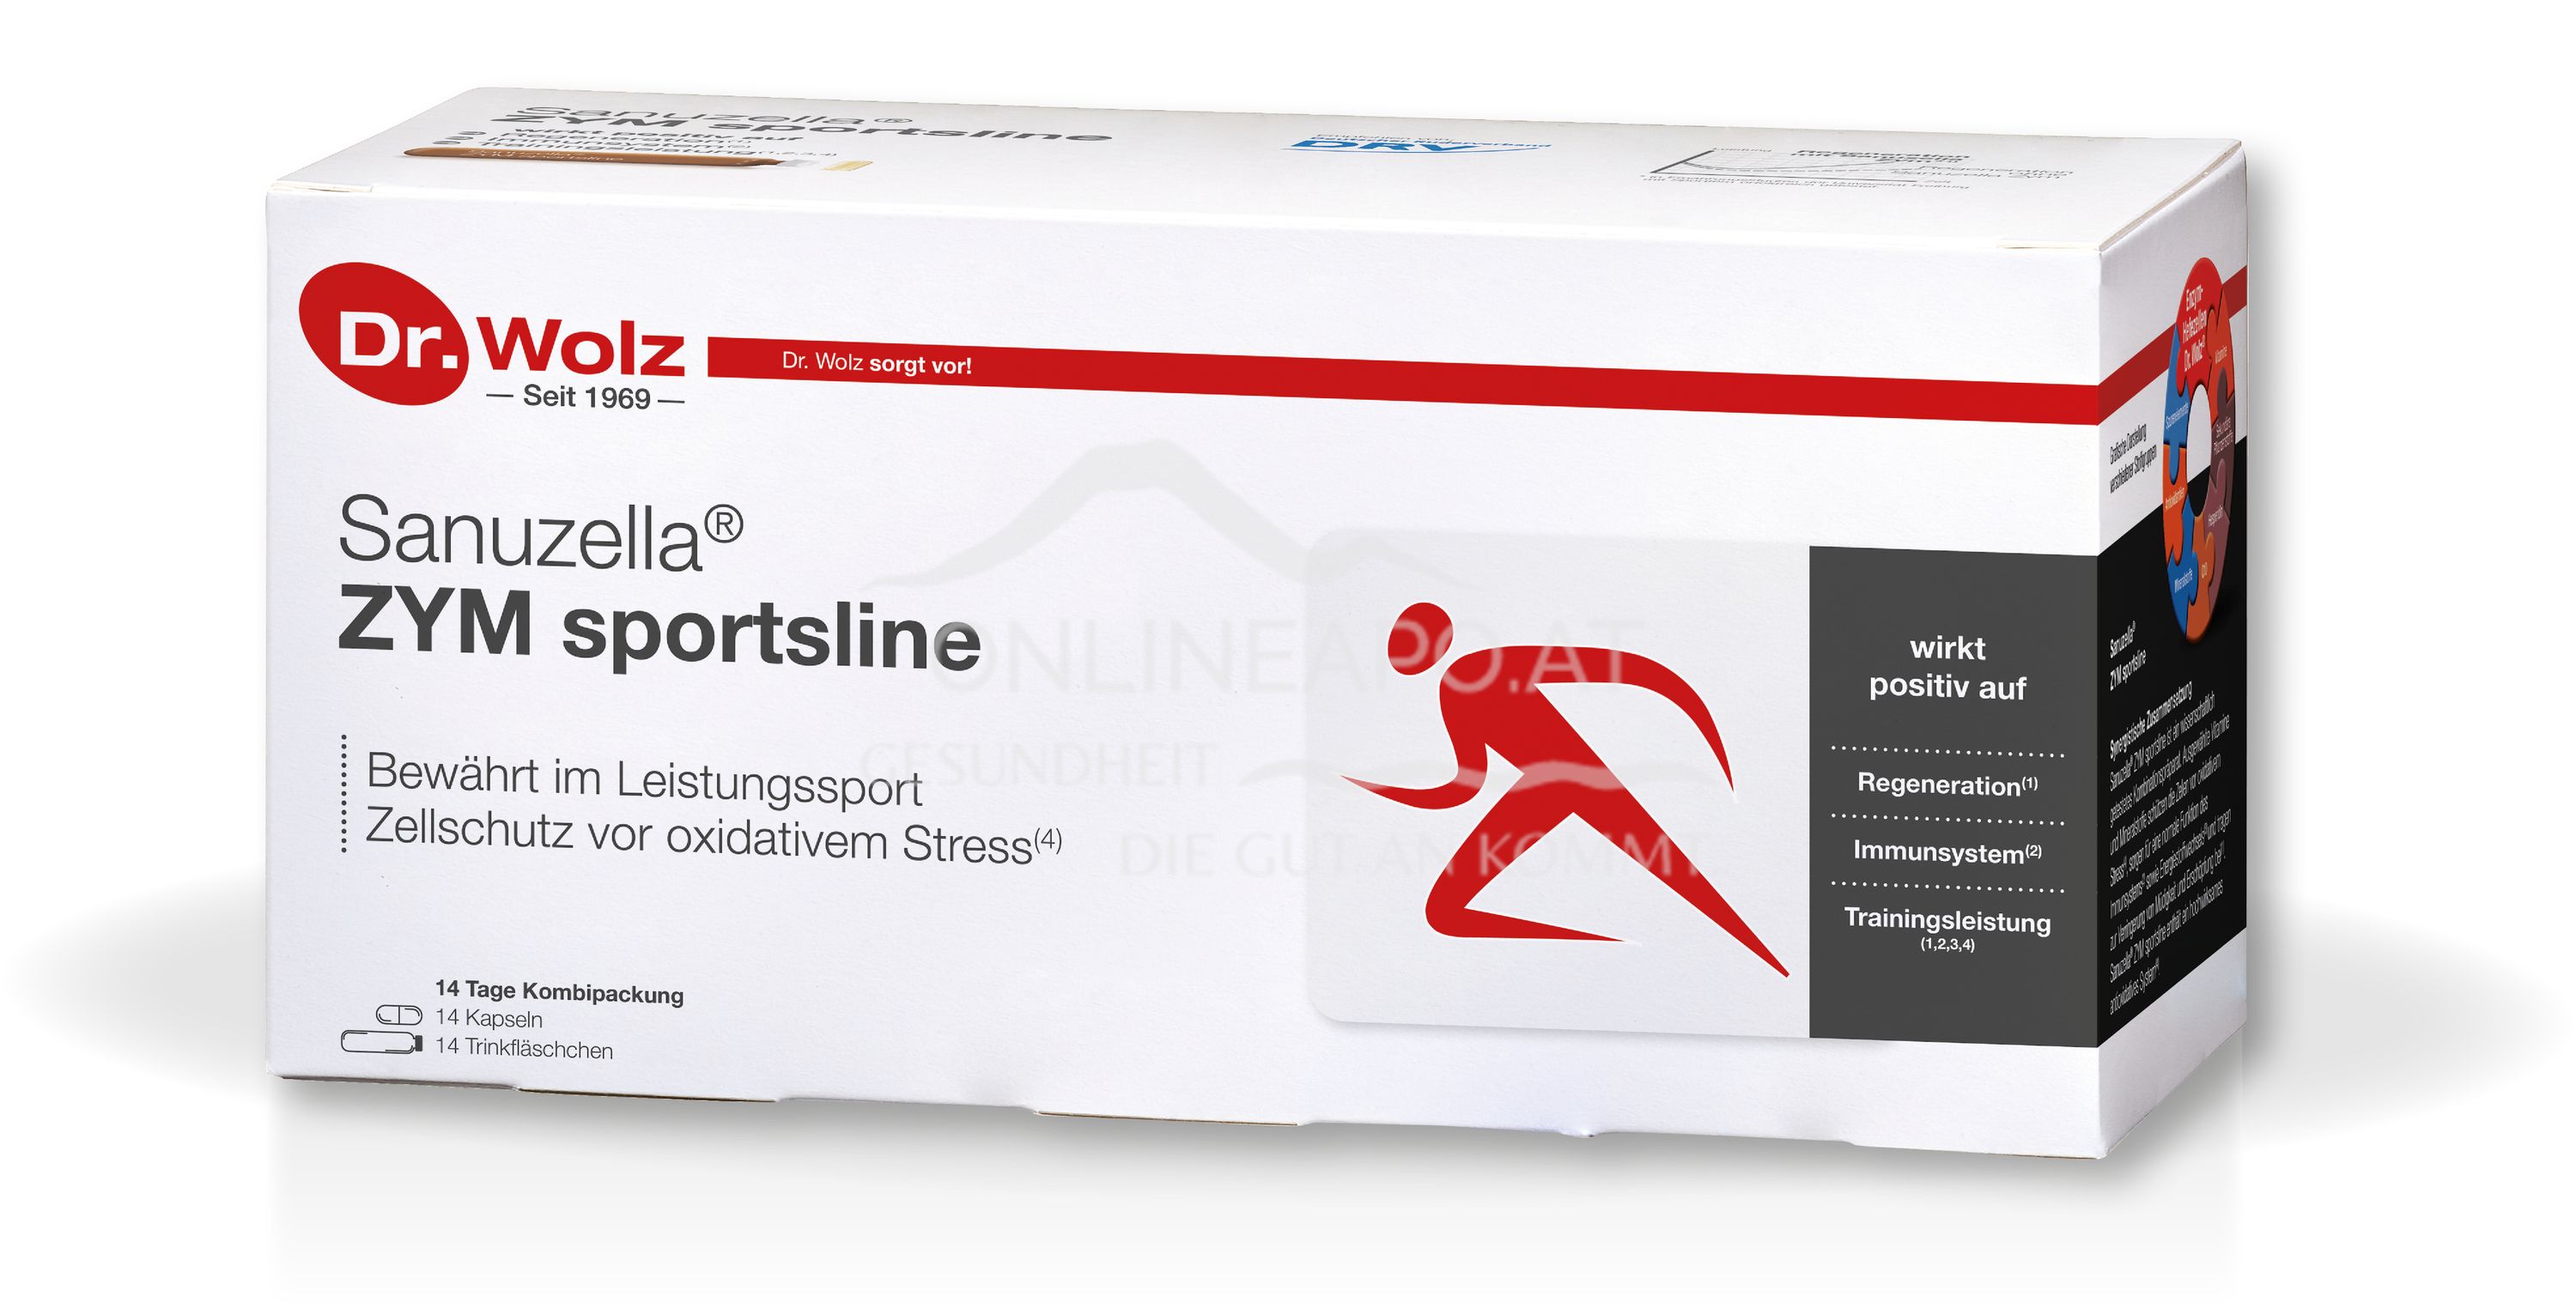 Dr. Wolz Sanuzella® ZYM sportsline